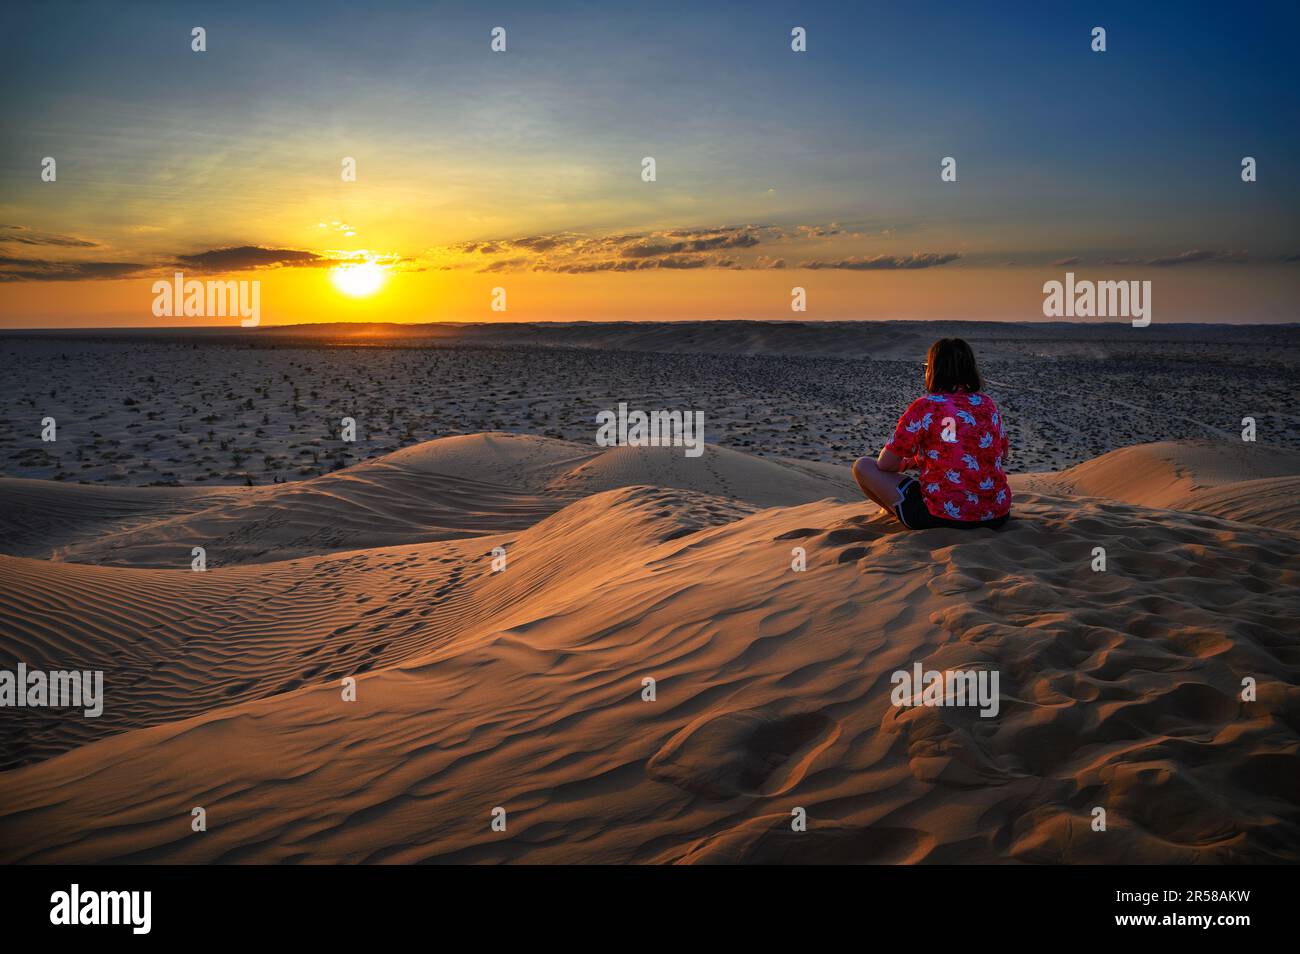 Eine Frau, die den Sonnenuntergang über den Sanddünen der arabischen Wüste in Oman beobachtet Stockfoto